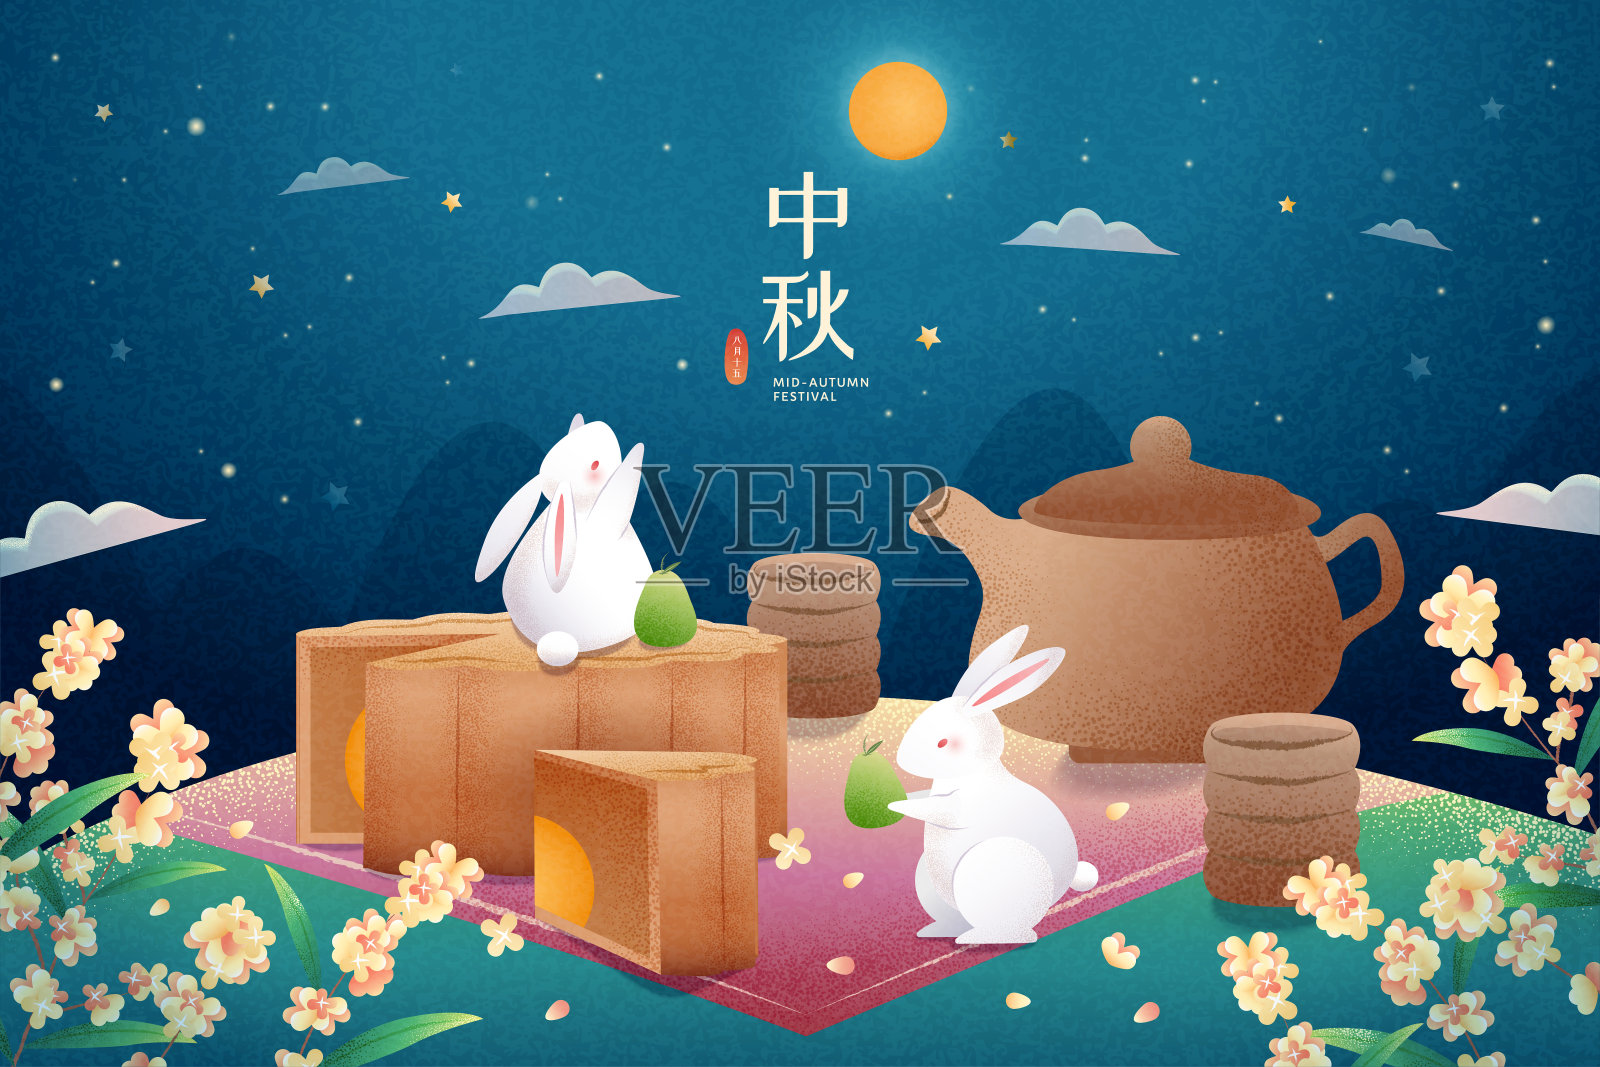 中秋野餐玉兔插图设计模板素材